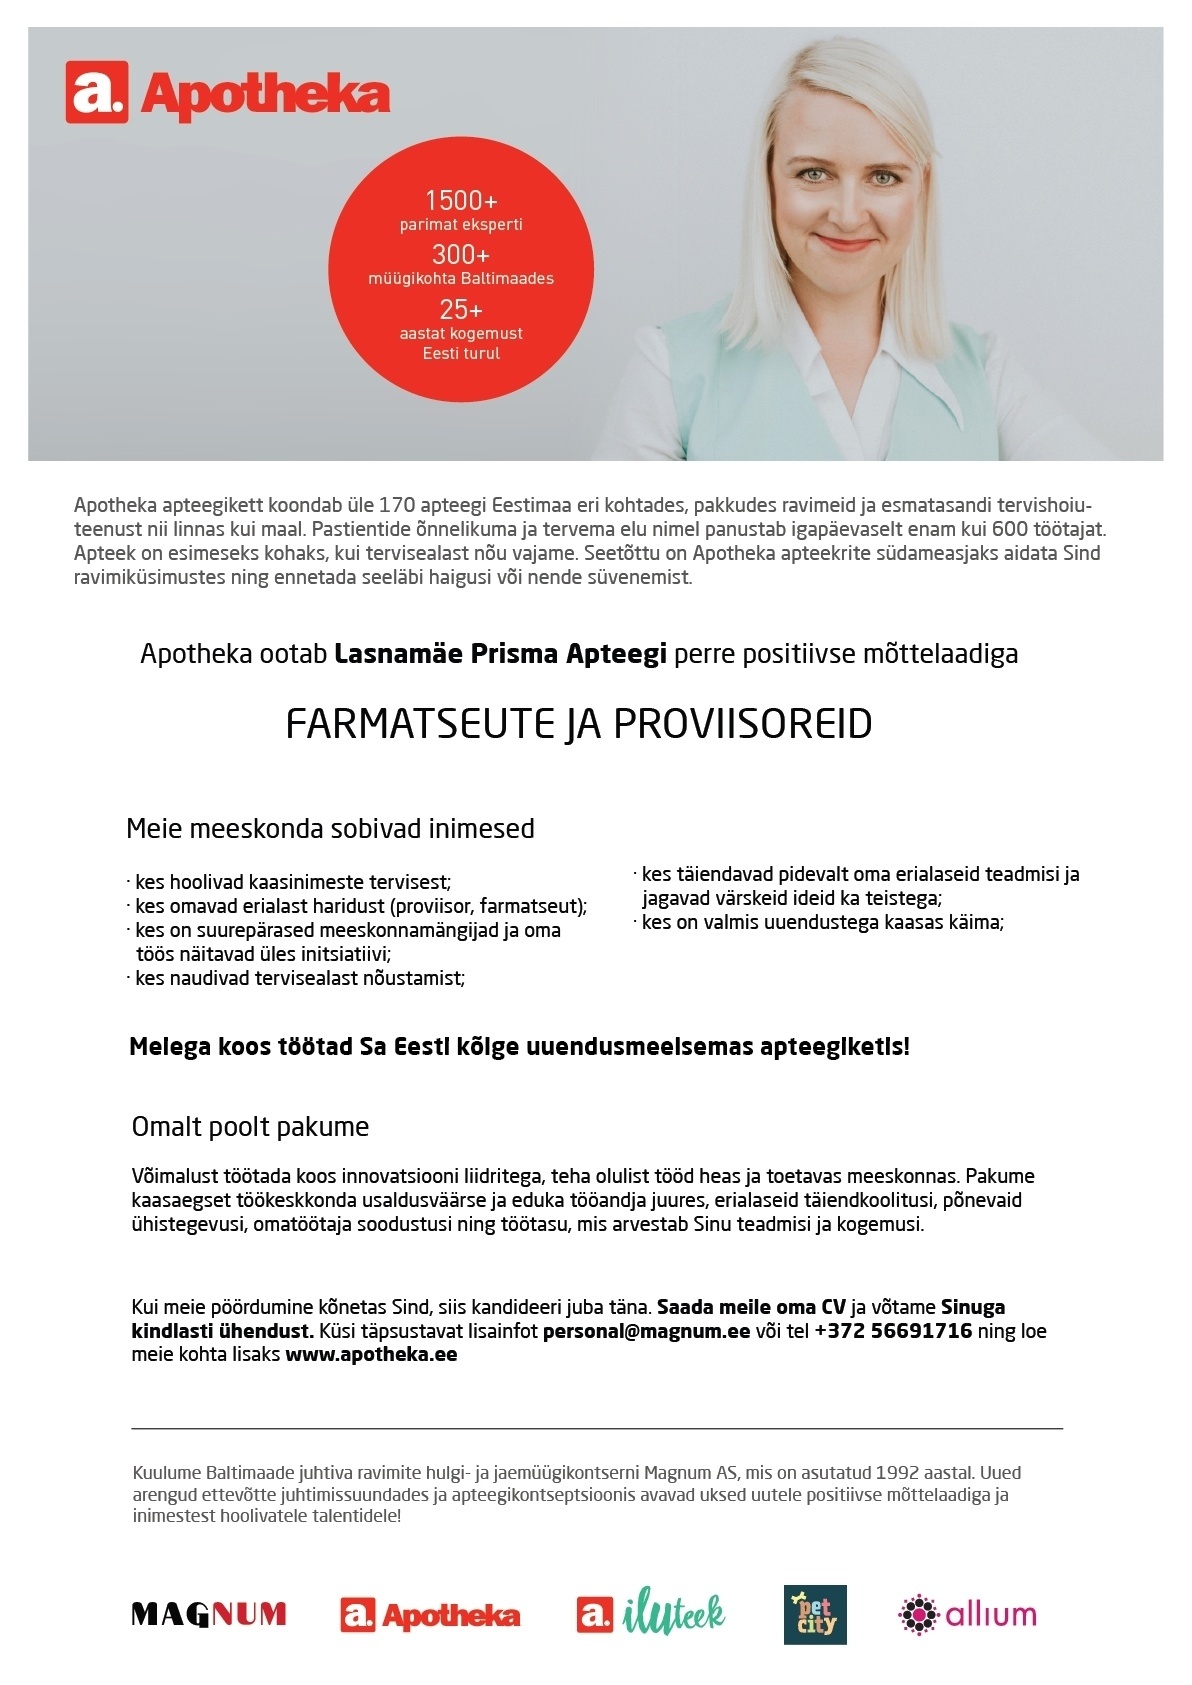 CV Keskus tööpakkumine Proviisor või farmatseut Lasnamäe Prisma Apteeki,  2018-10-23